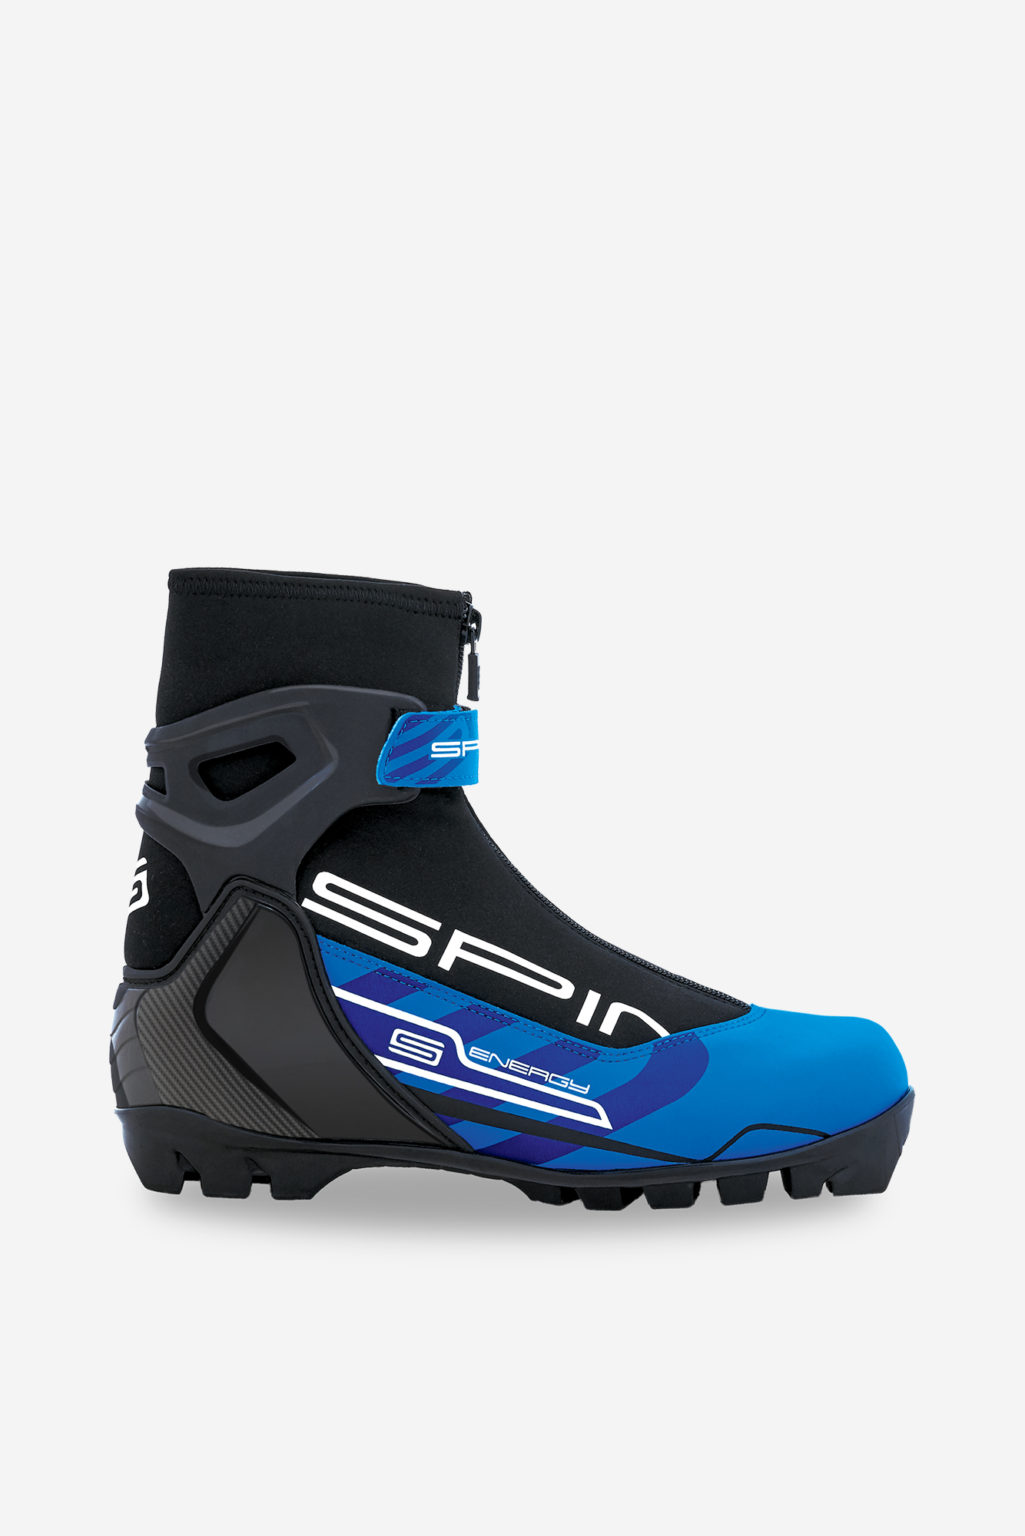 Ботинки спайн купить. Ботинки Spine NNN. Ботинки лыжные NNN Spine Energy 258. Лыжные ботинки Spine NNN Energy 258 черный/синий. Ботинки лыжные спайн NNN.